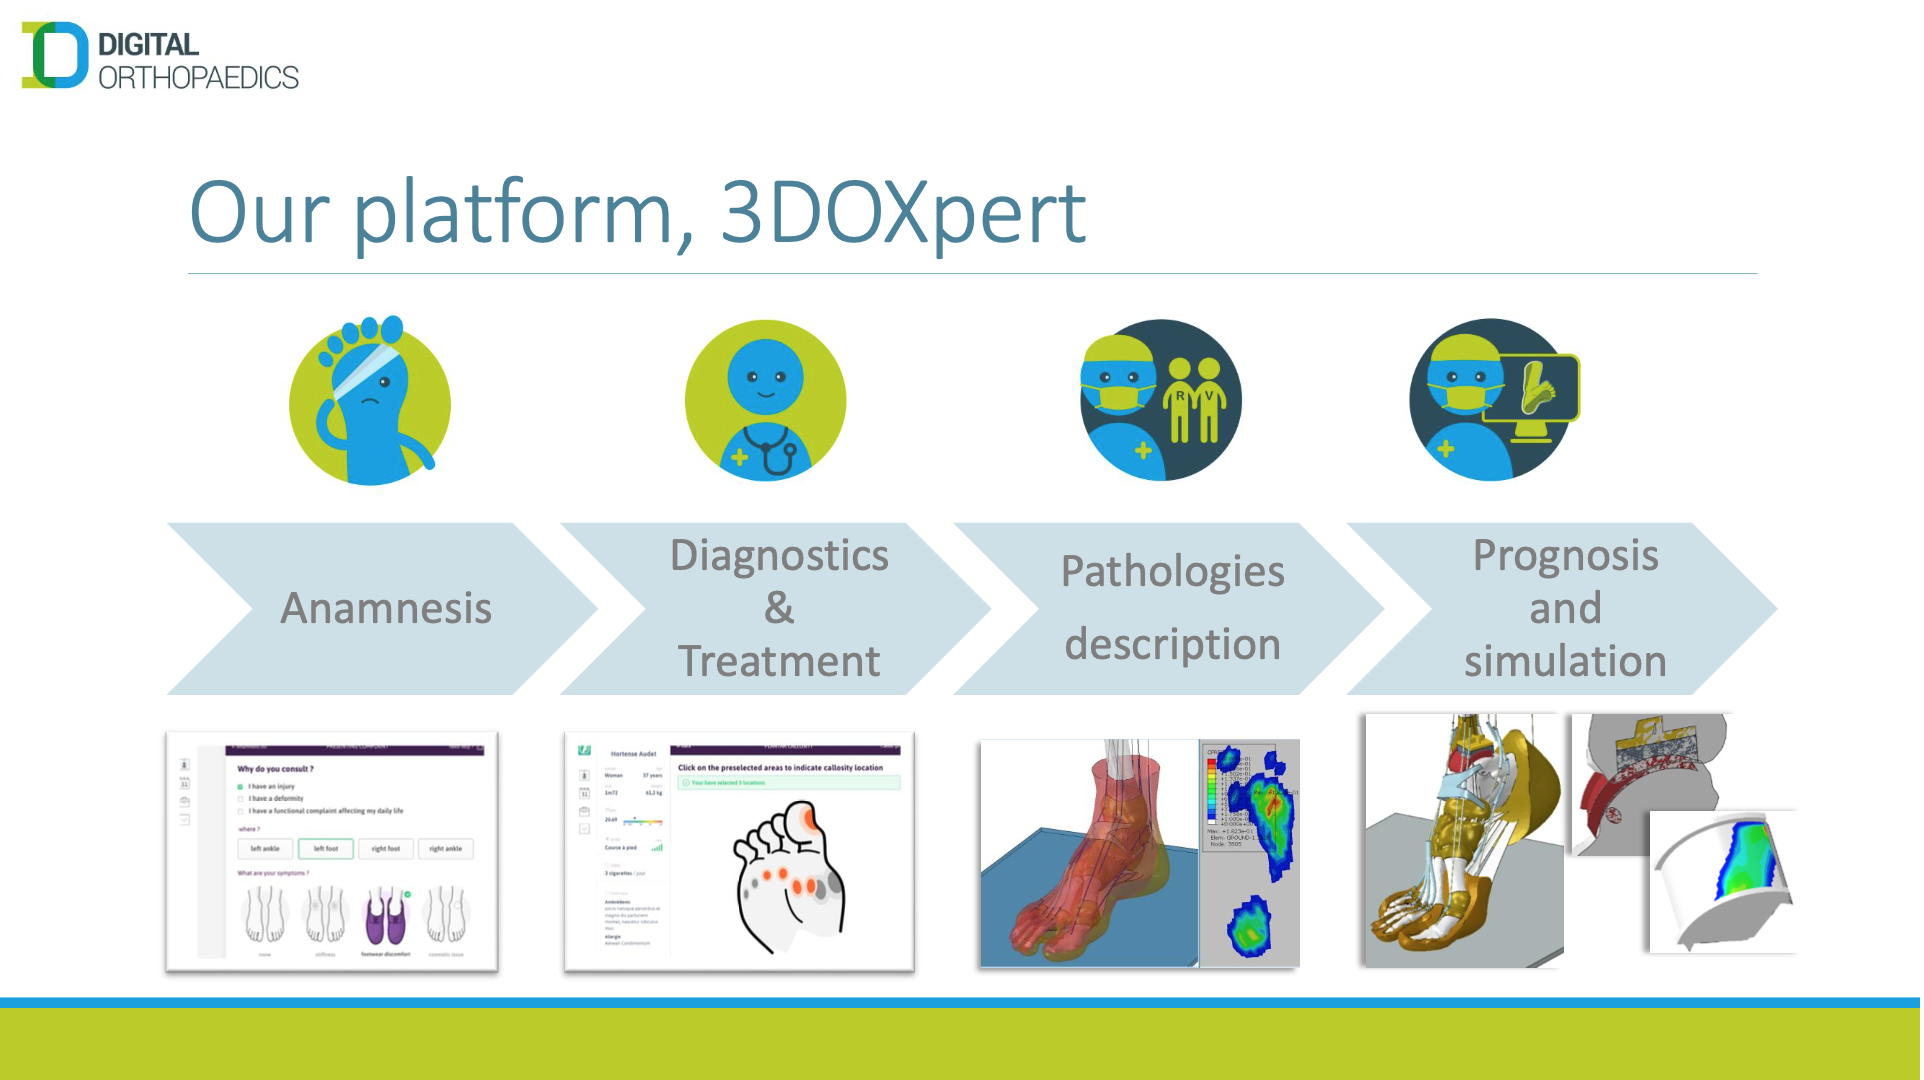 digital_orthopaedics_3doxpert_platform